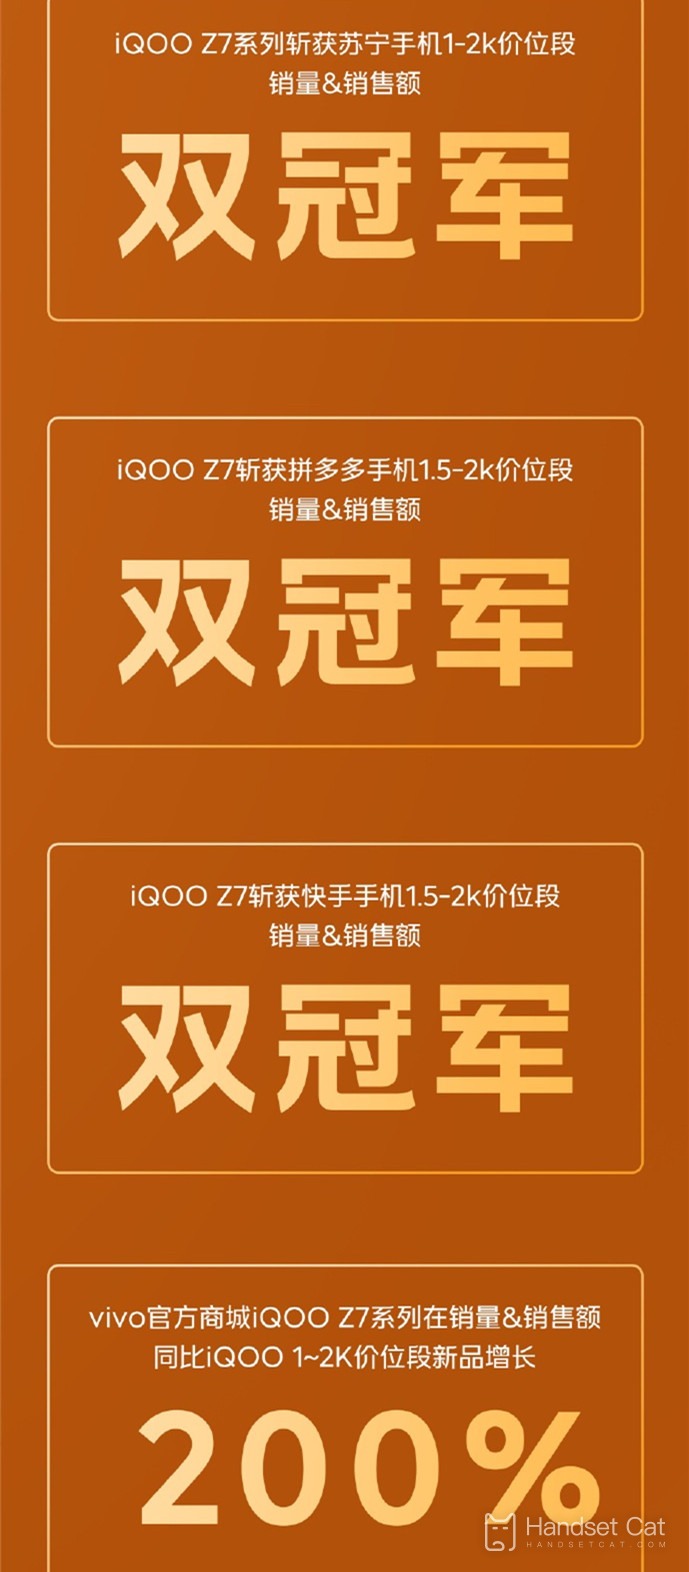 開售即報捷！iQOO Z7系列斬獲多渠道銷量、銷售額冠軍